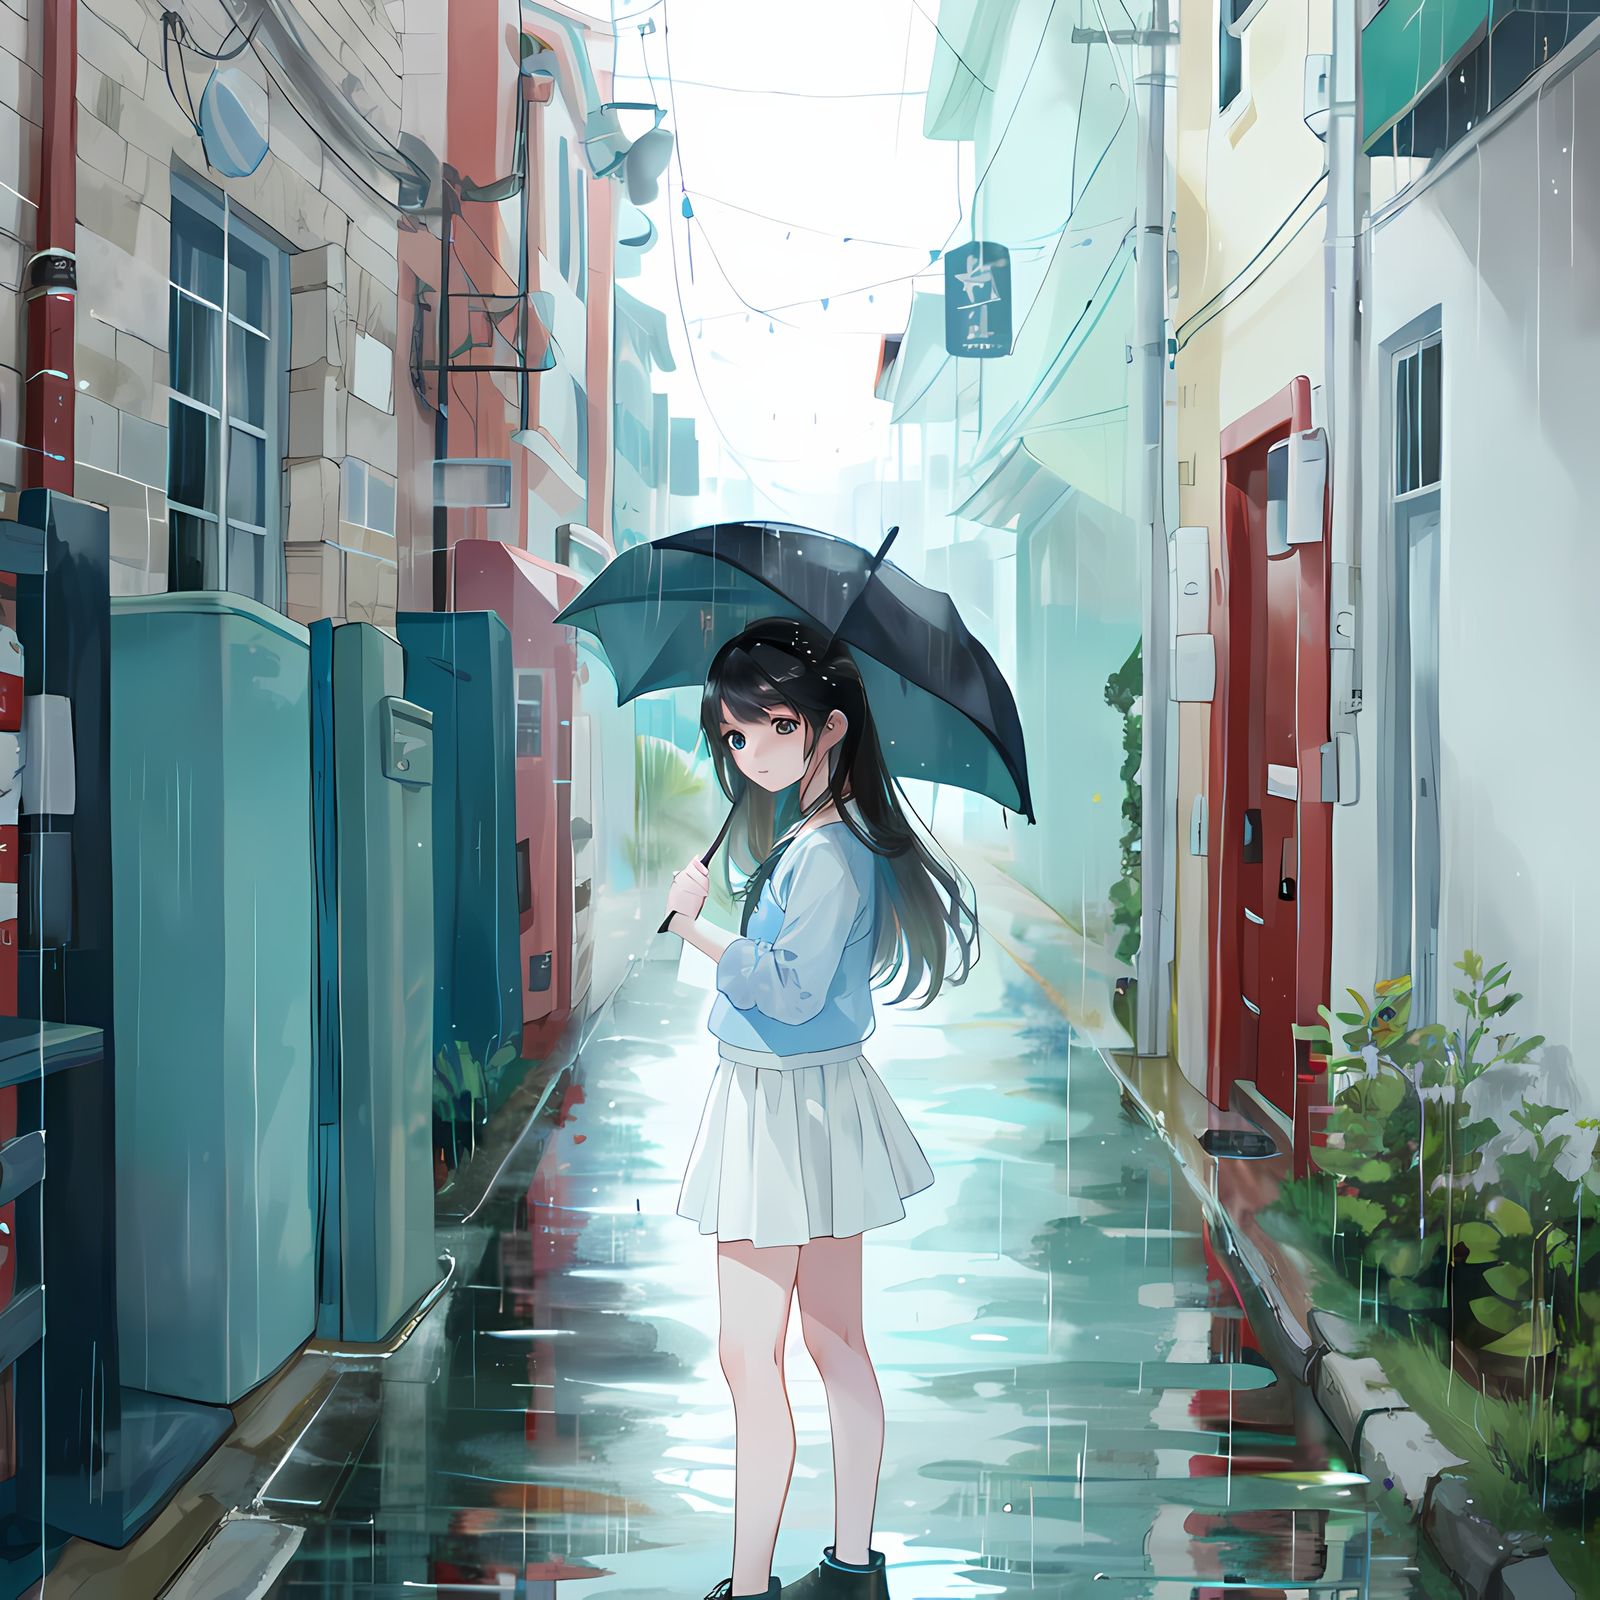 小姐姐撑起一把彩色透明伞，独自在雨中等待，身着雨衣橡胶靴，悠然自得。插画图片壁纸